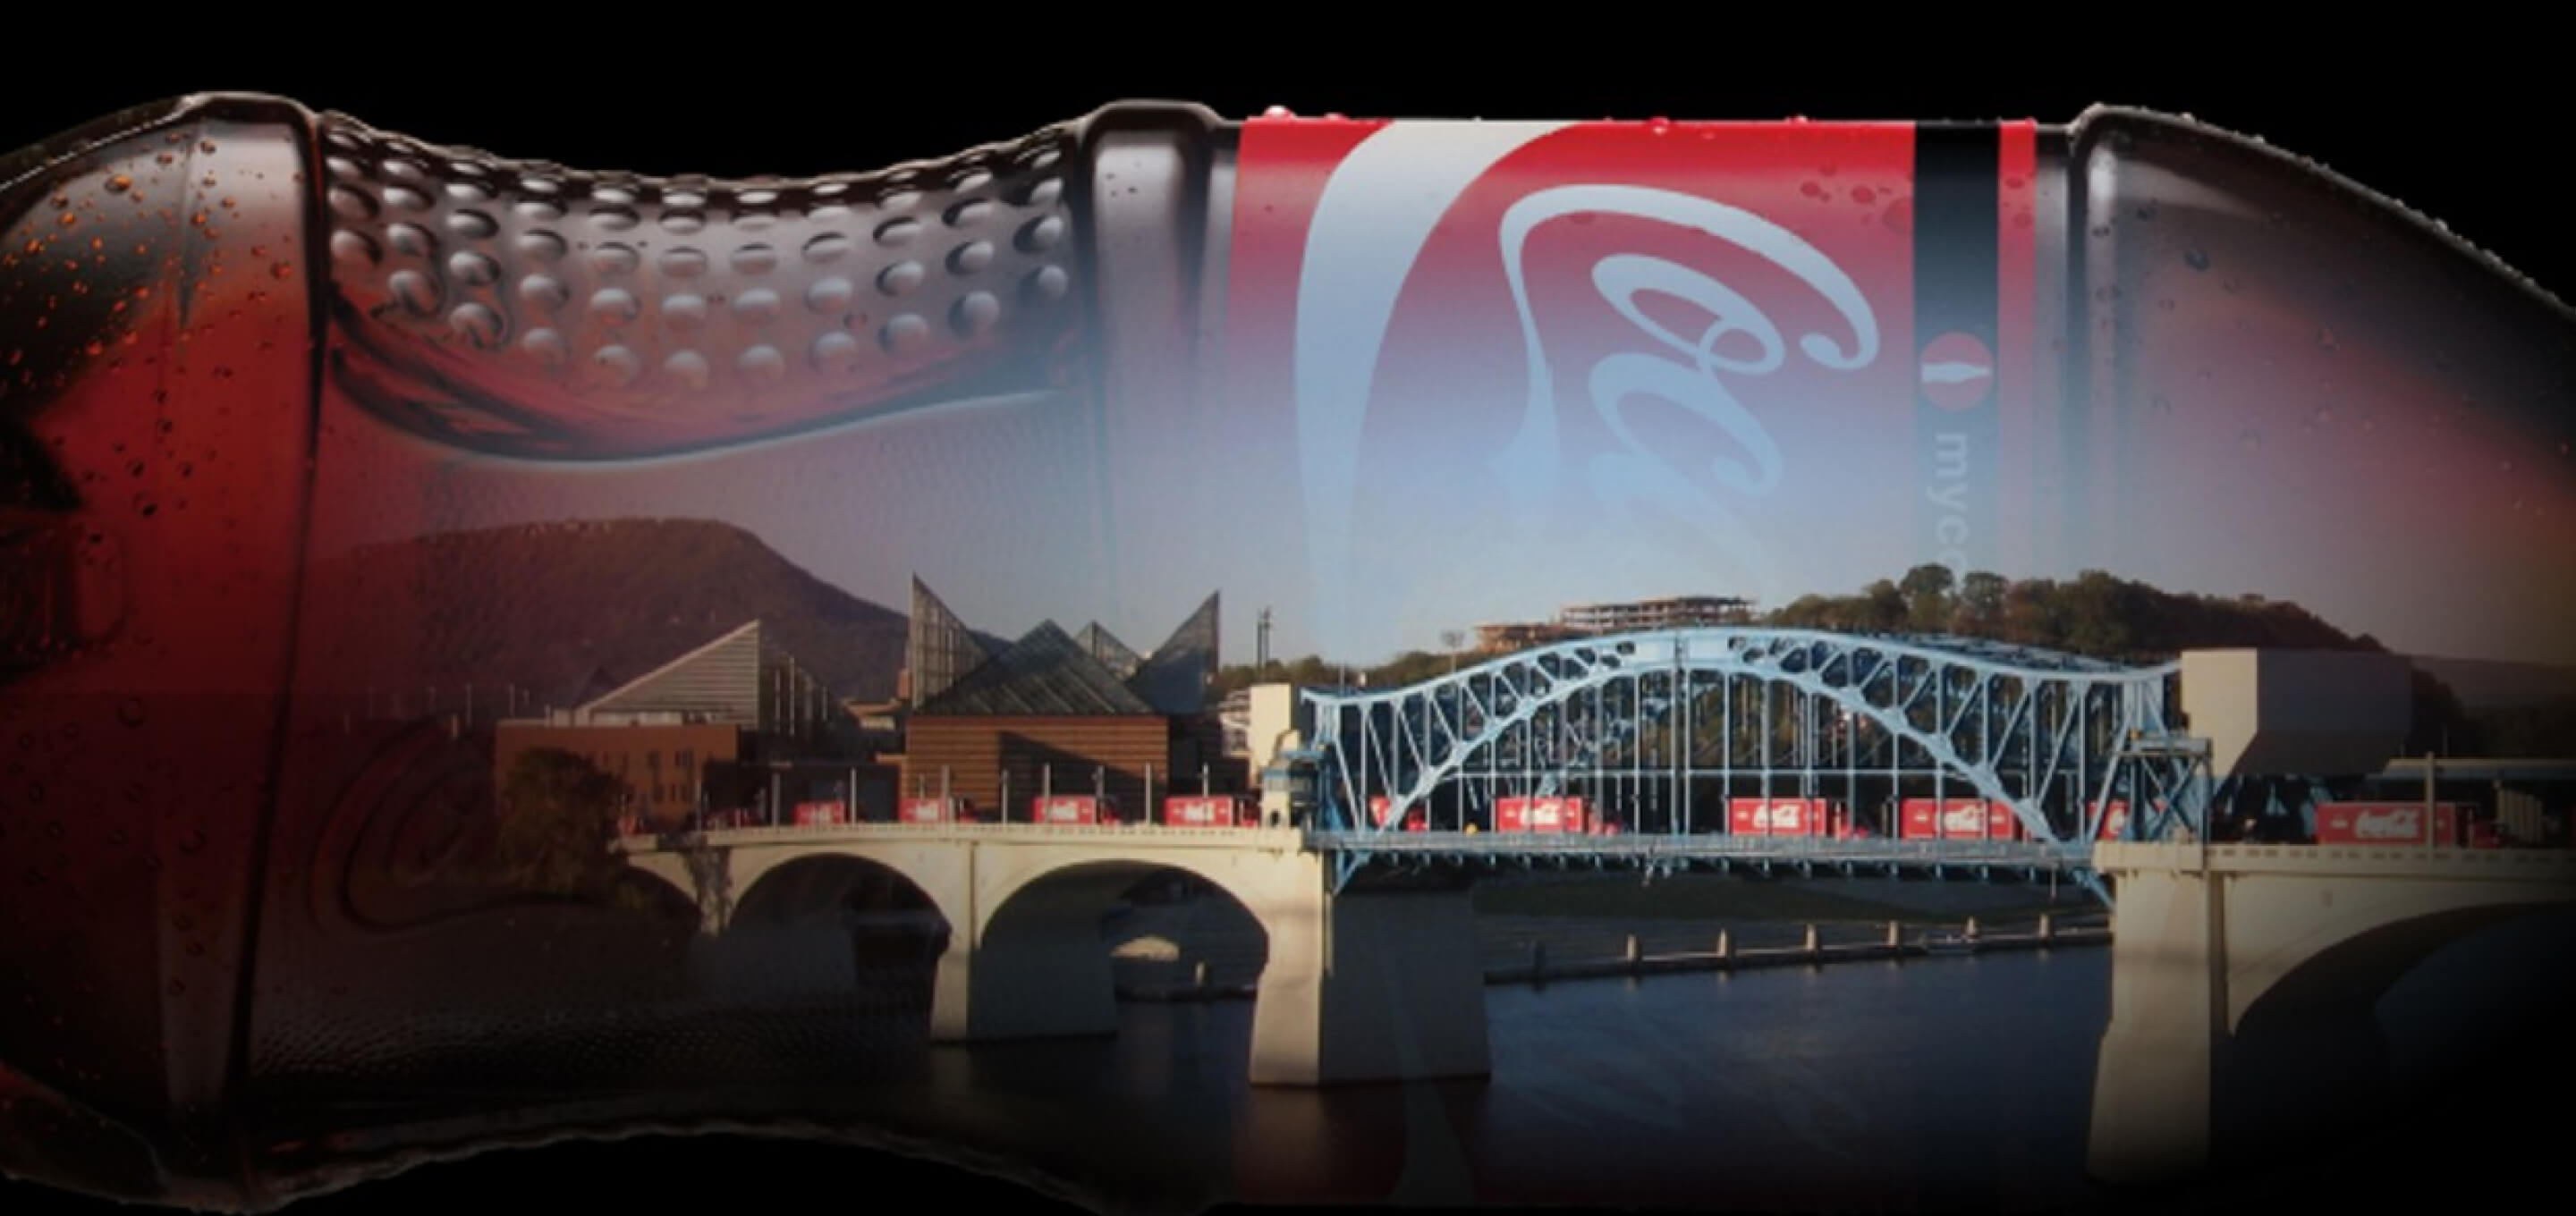 Illustrative background image of Coca Cola Bottling co